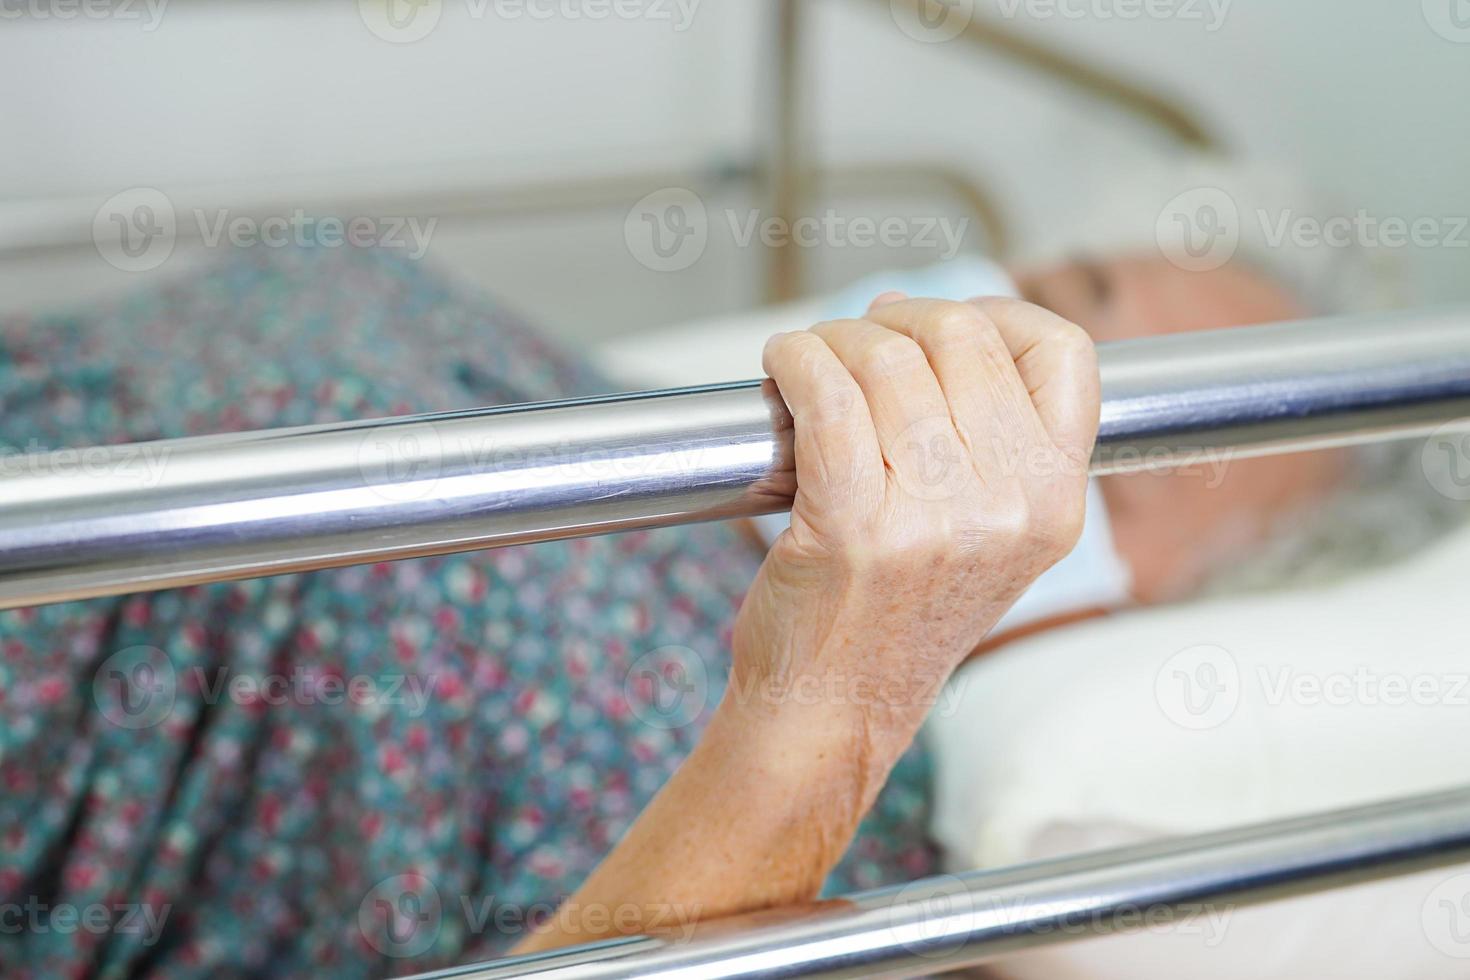 donna anziana asiatica paziente che tiene la sponda del letto mentre si sdraia con speranza in attesa della sua famiglia in ospedale. foto